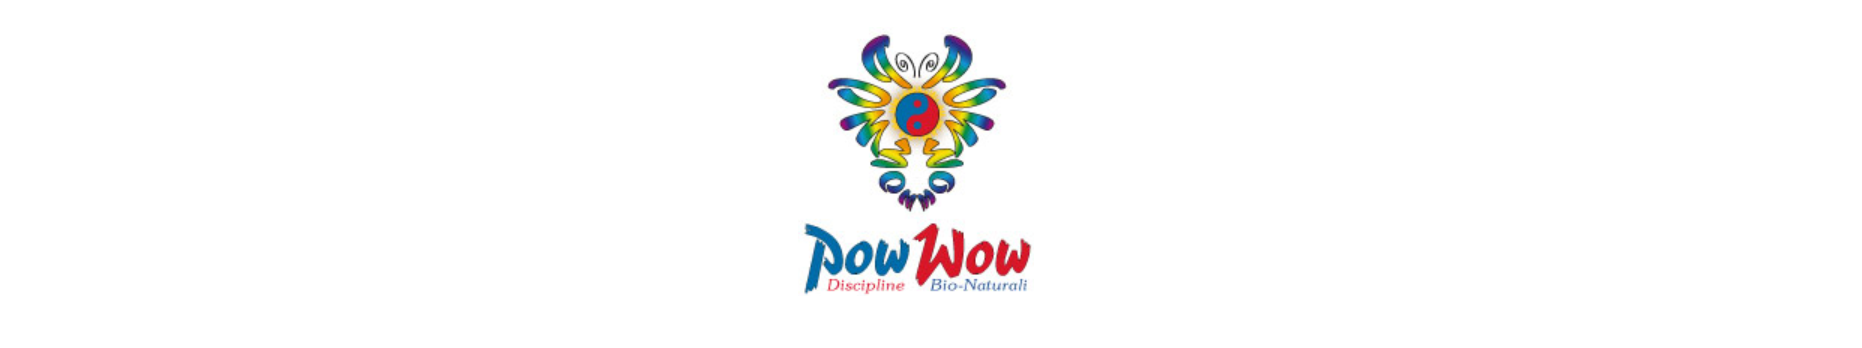 Associazione pow_wow logo